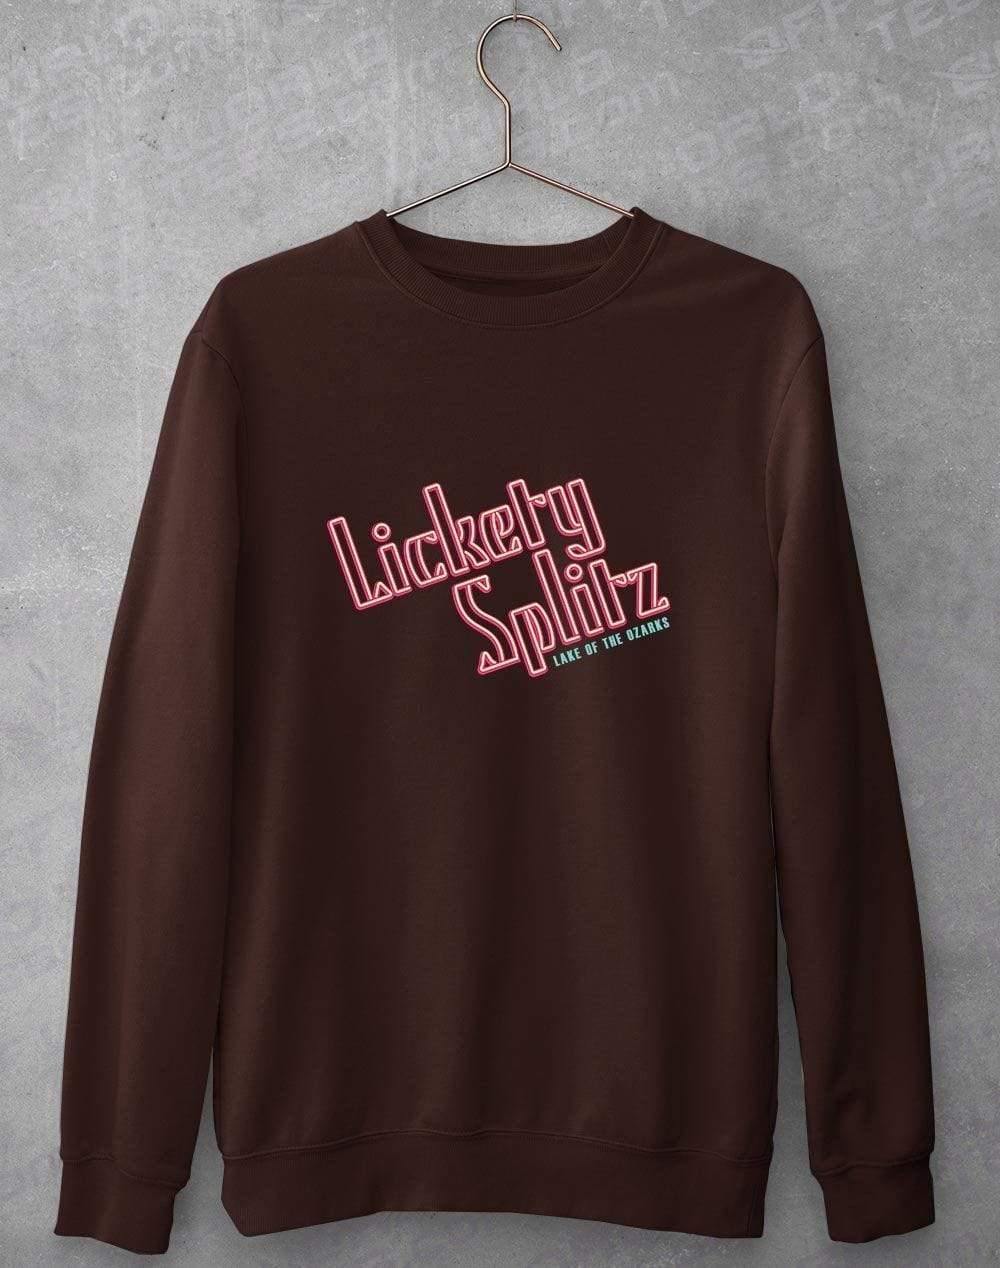 Lickety Splitz Sweatshirt S / Chocolate  - Off World Tees